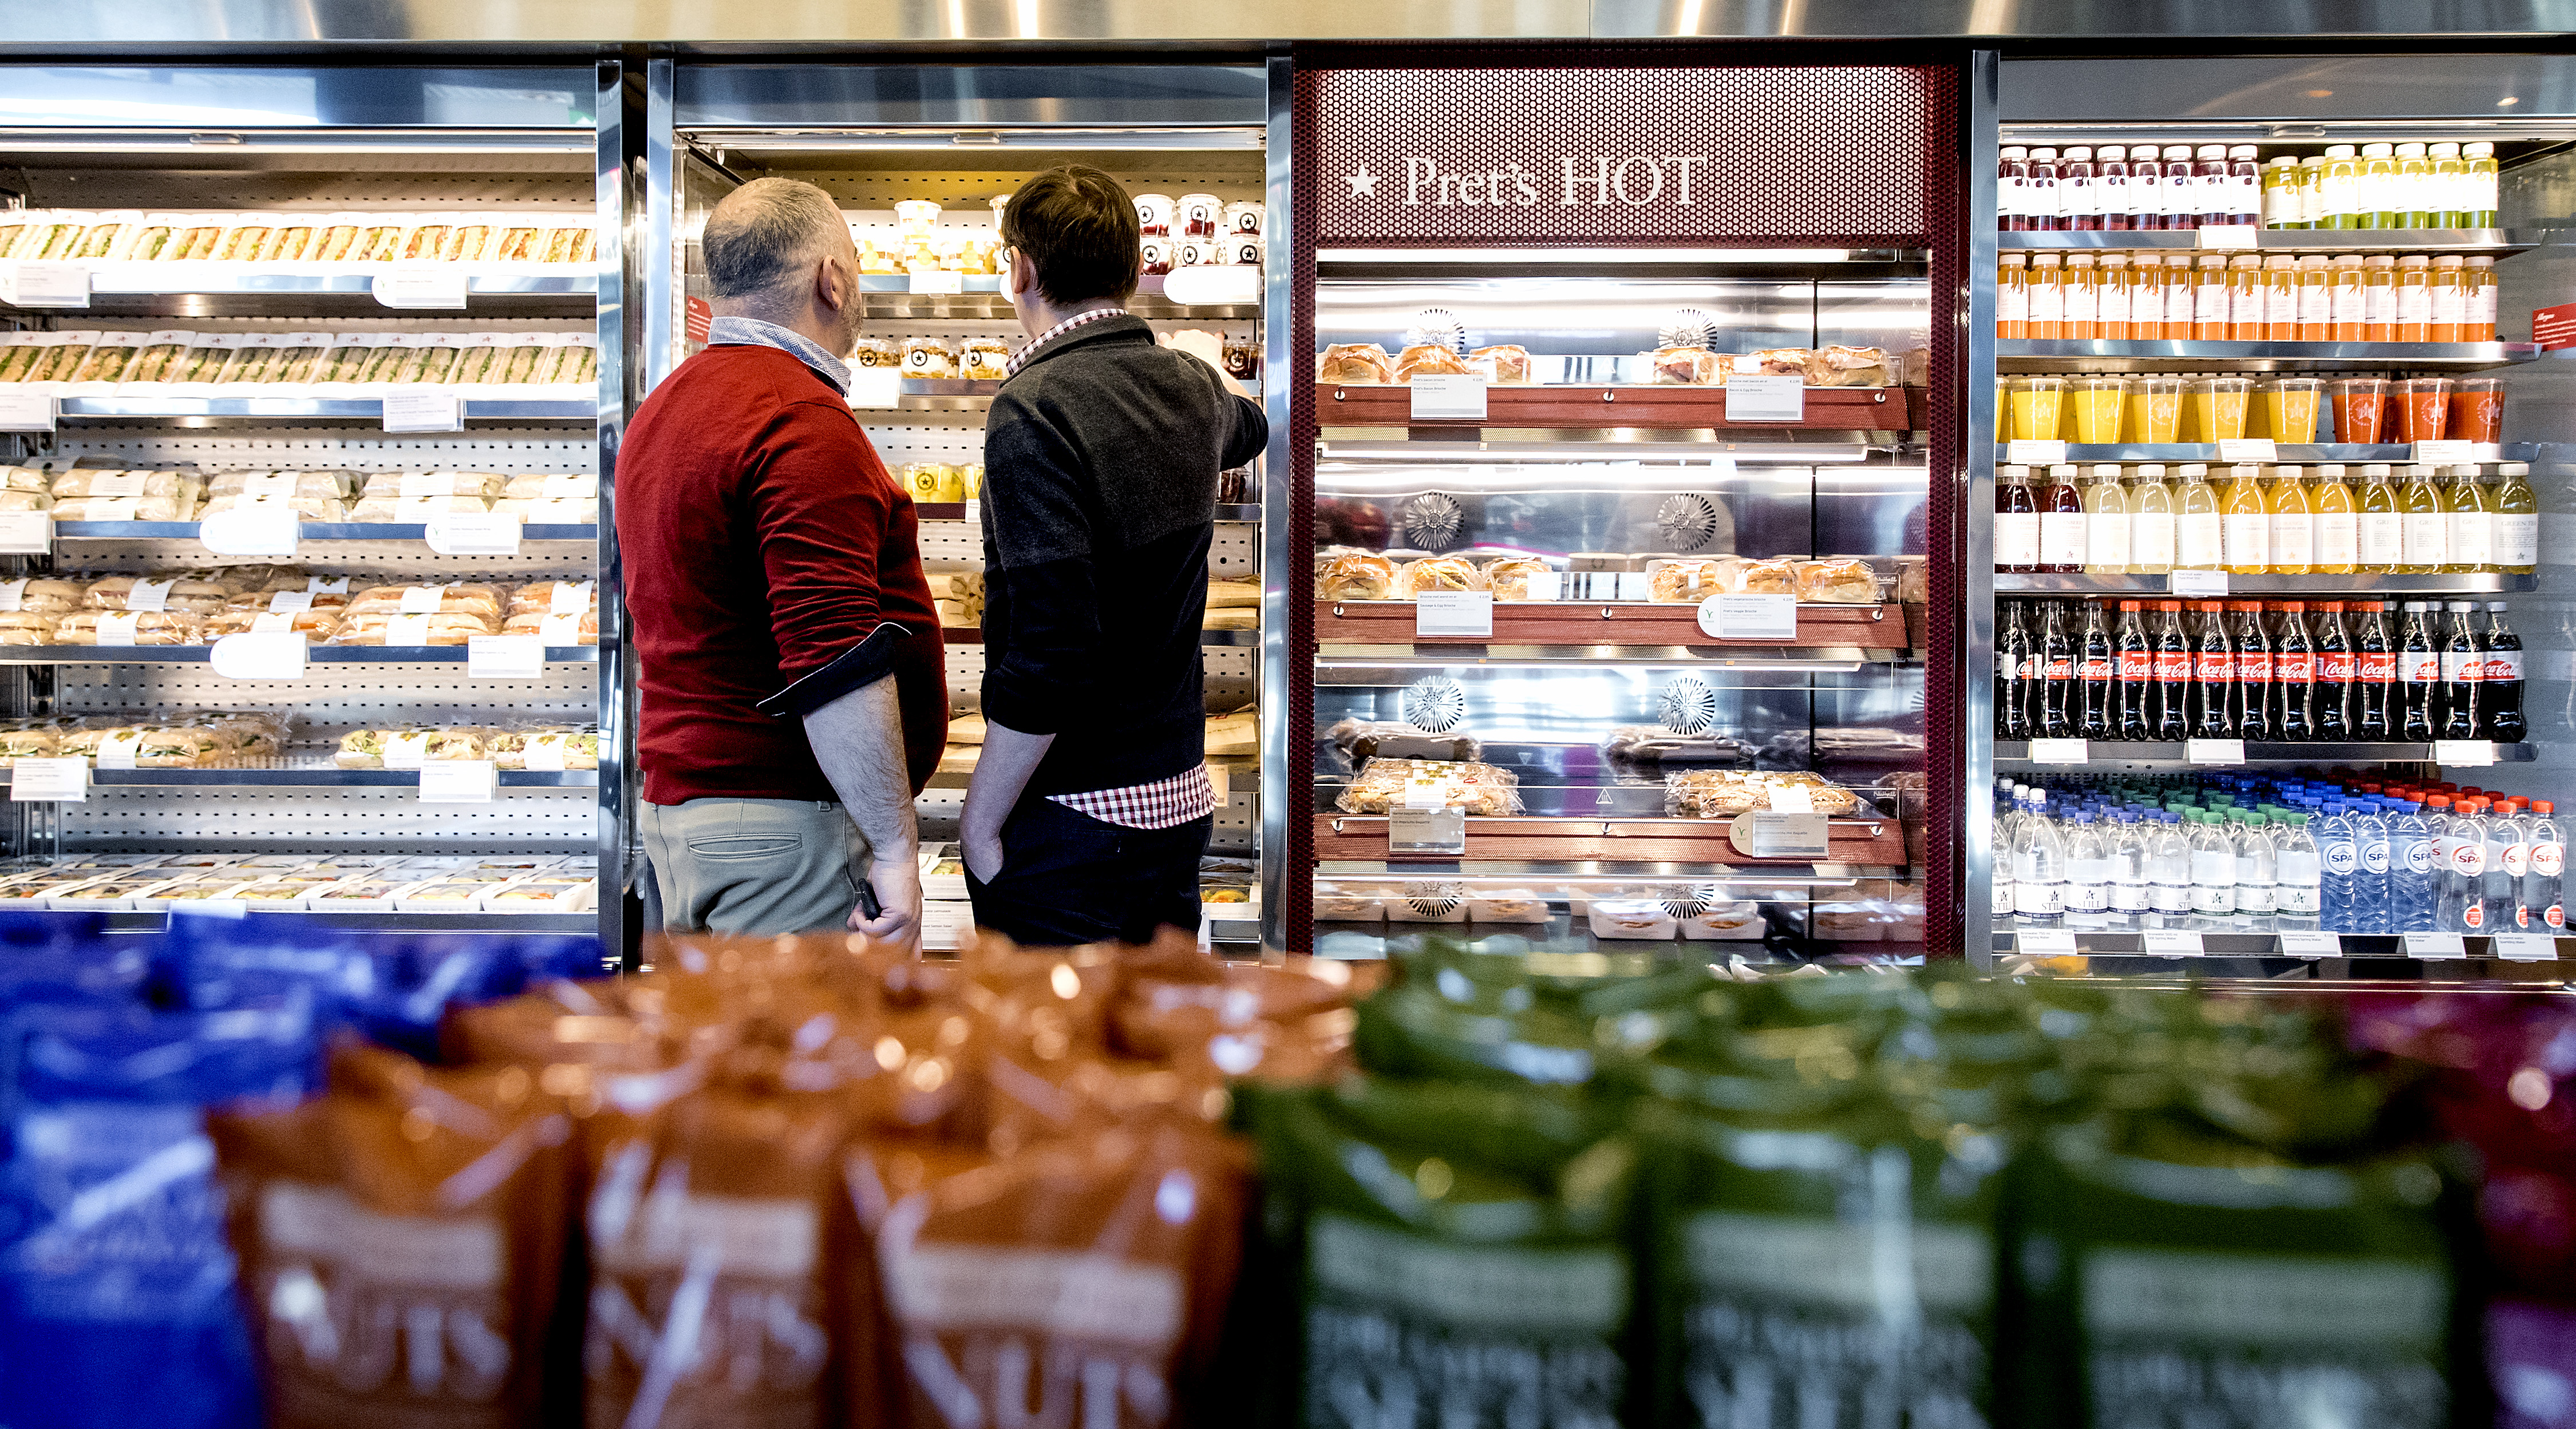 2018-03-19 10:06:12 UTRECHT - Het Britse sandwichconcern Pret A Manger heeft op station Utrecht Centraal zijn eerste filiaal in Nederland geopend. De keten heeft wereldwijd 450 vestigingen. ANP KOEN VAN WEEL